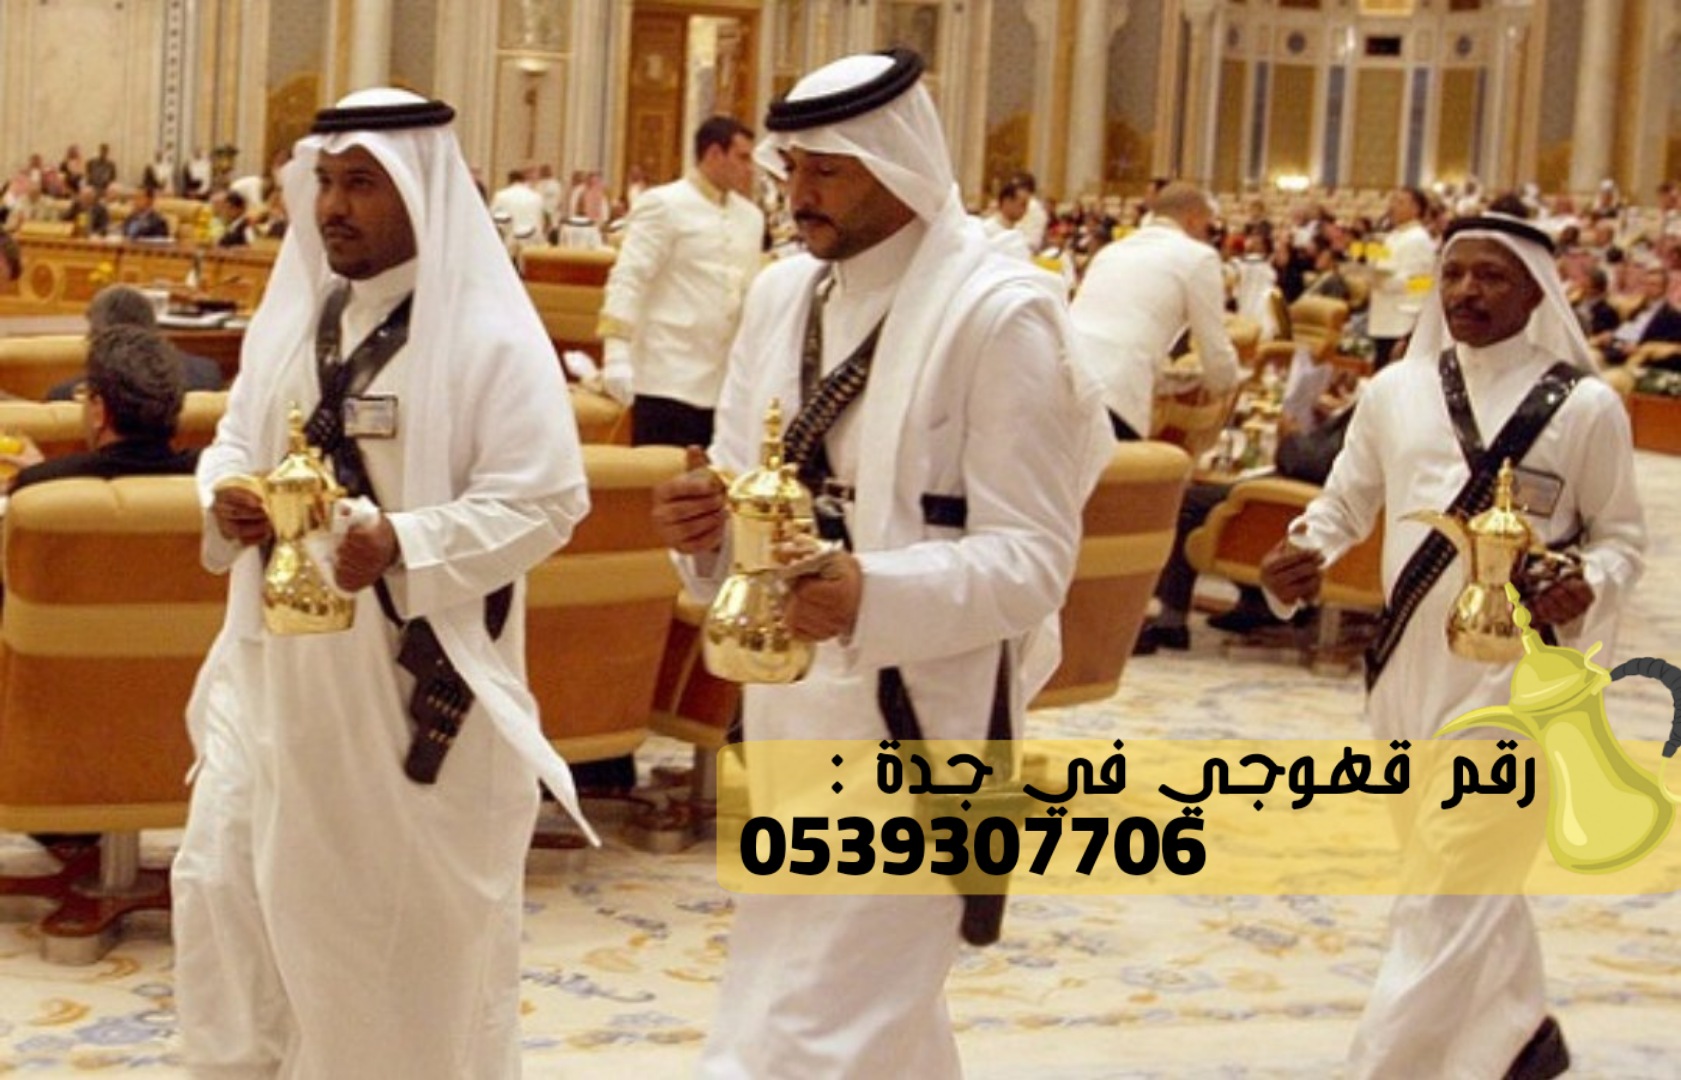 قهوجيين و صبابين في جدة, 0539307706 P_2427vdavm6